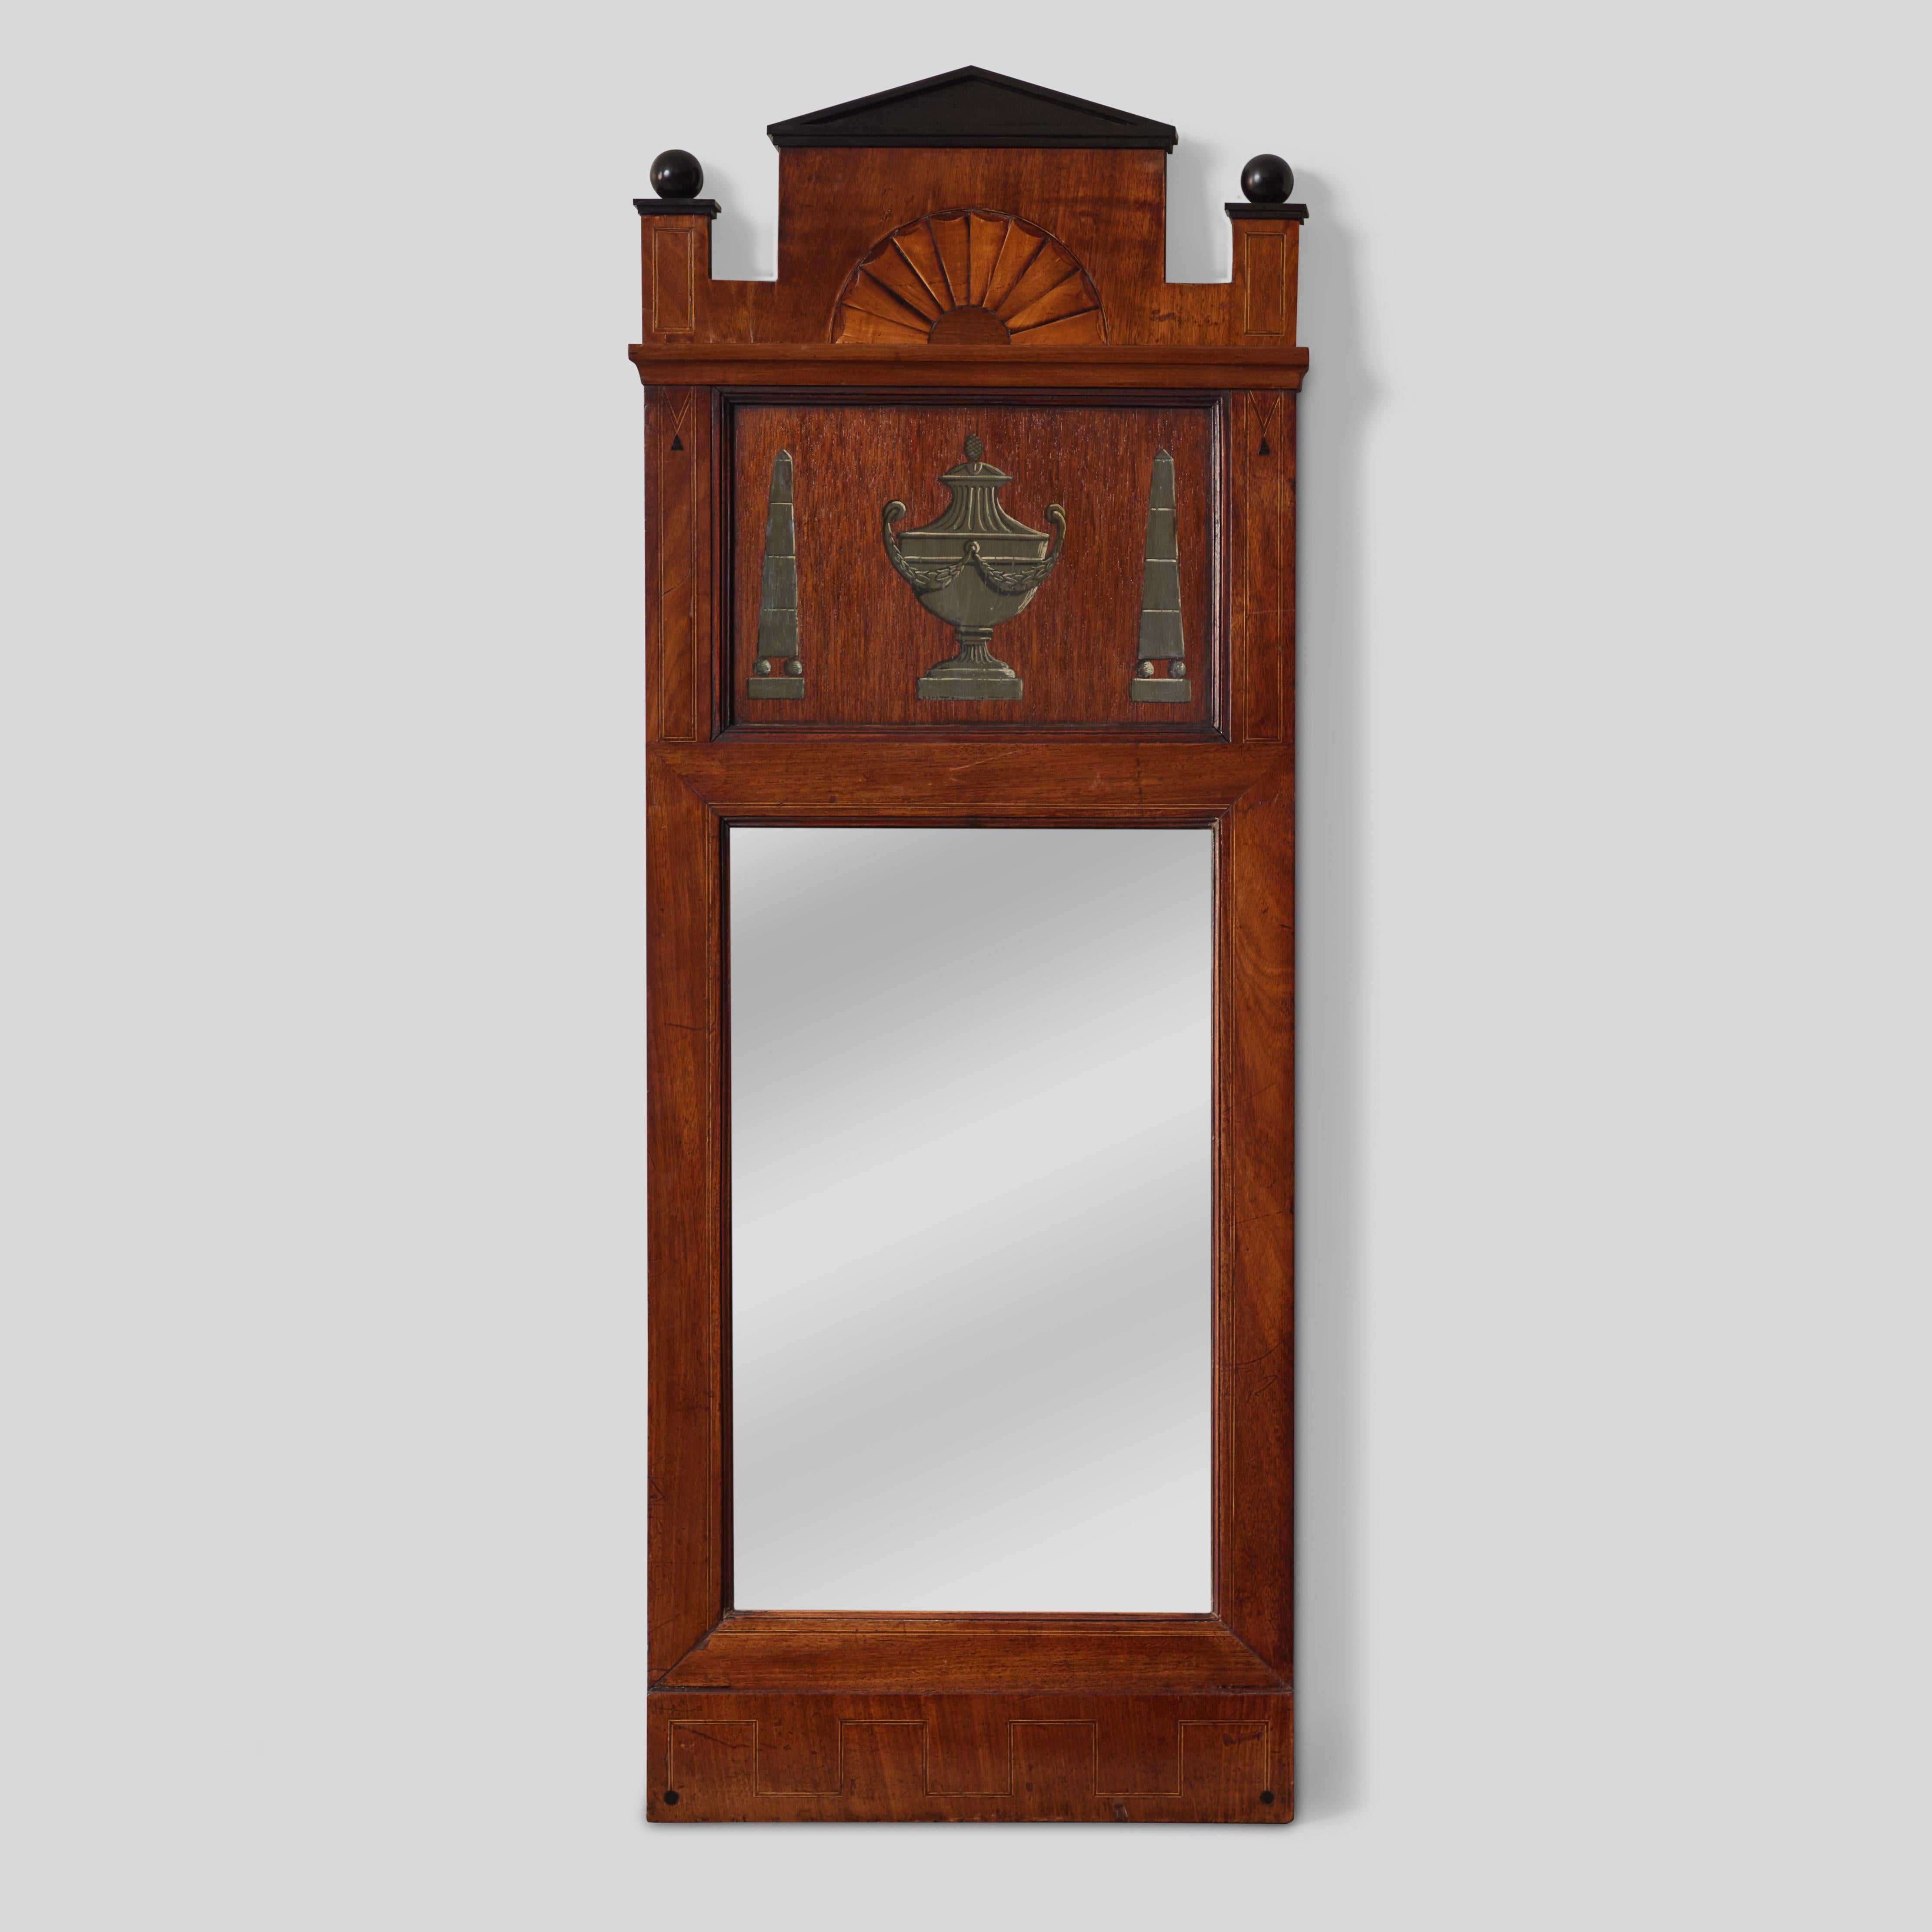 Miroir d'appoint rectangulaire en bois de l'Italie des années 1820 dans le style Empire. Avec son décor peint en trompe-l'œil et en marqueterie d'un raffinement exceptionnel, son schéma architectural et ses délicats accents ébénisés, cette pièce